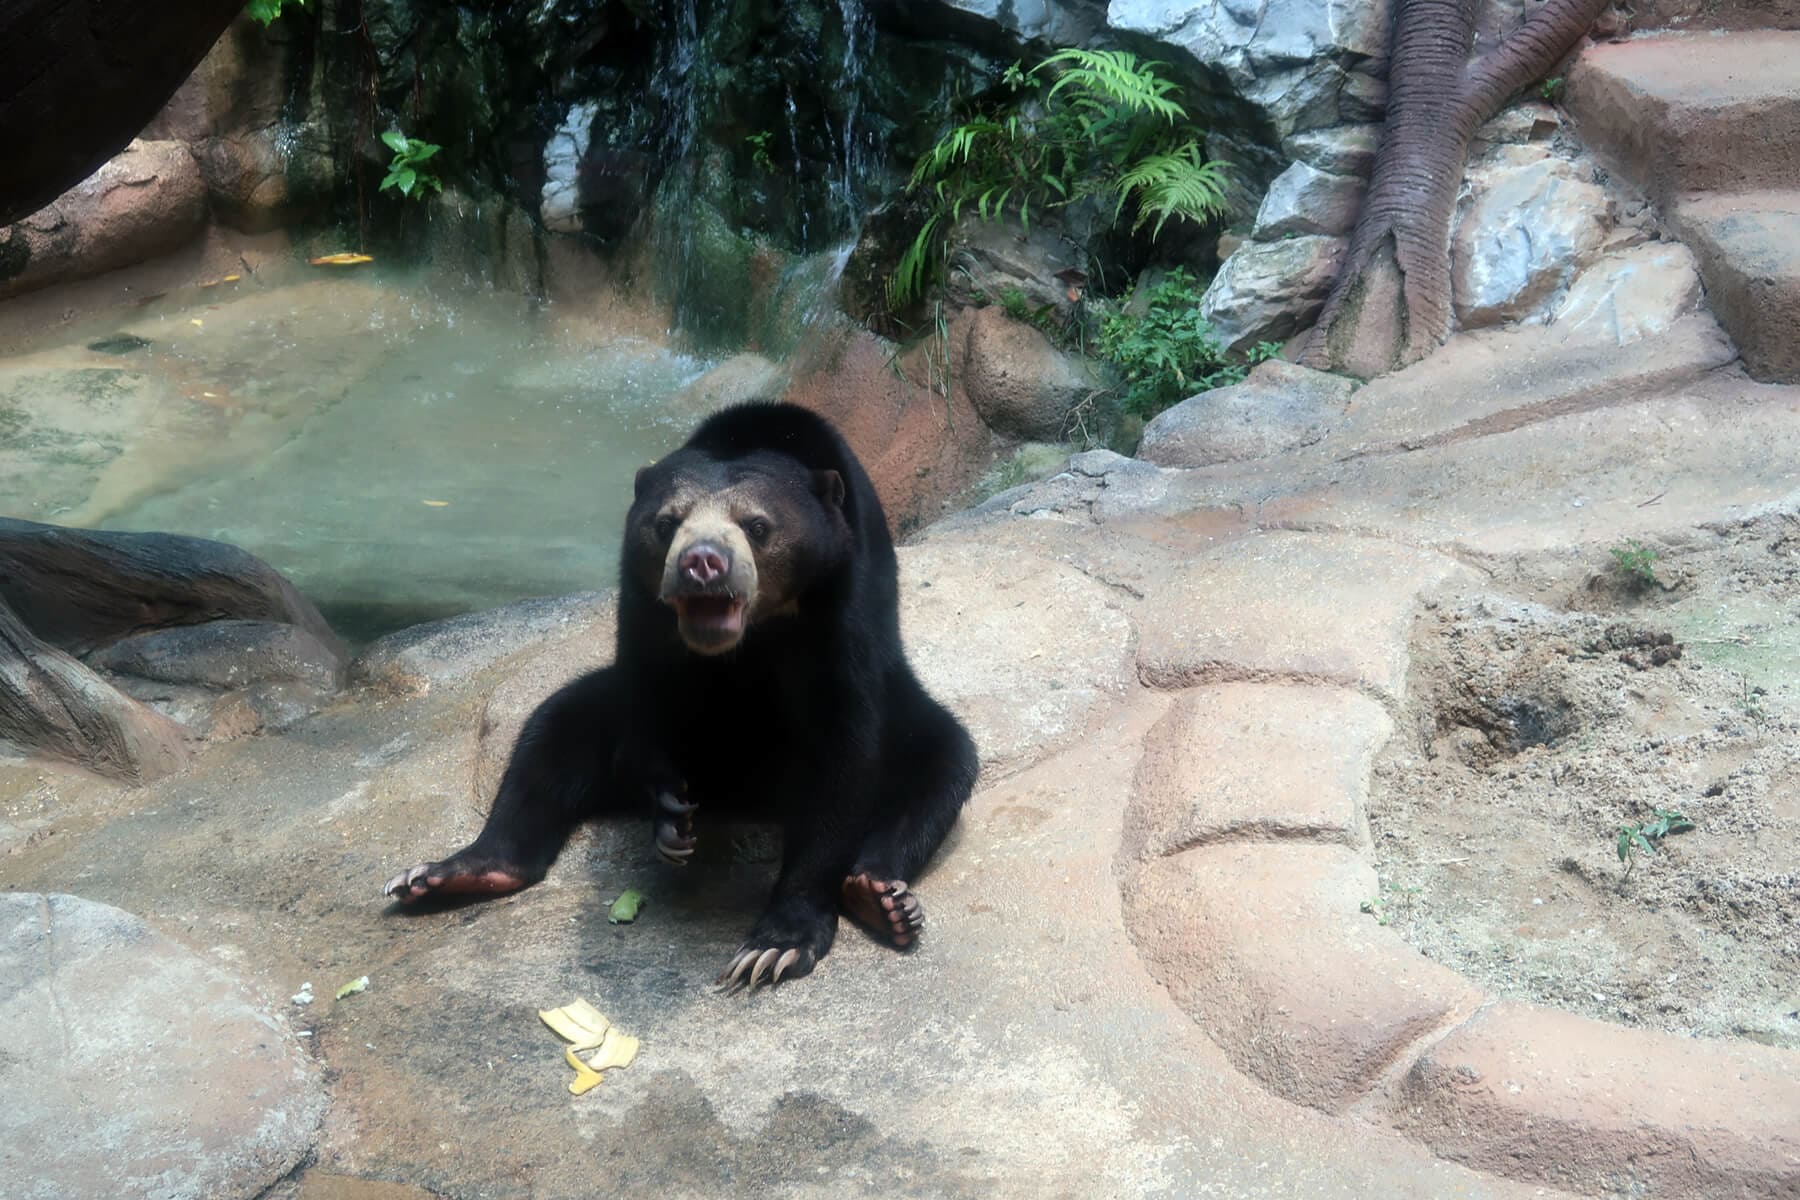 Sunway Lagoon Wildlife Park - The adorable yet ferocious sun bear loves eating fruits!